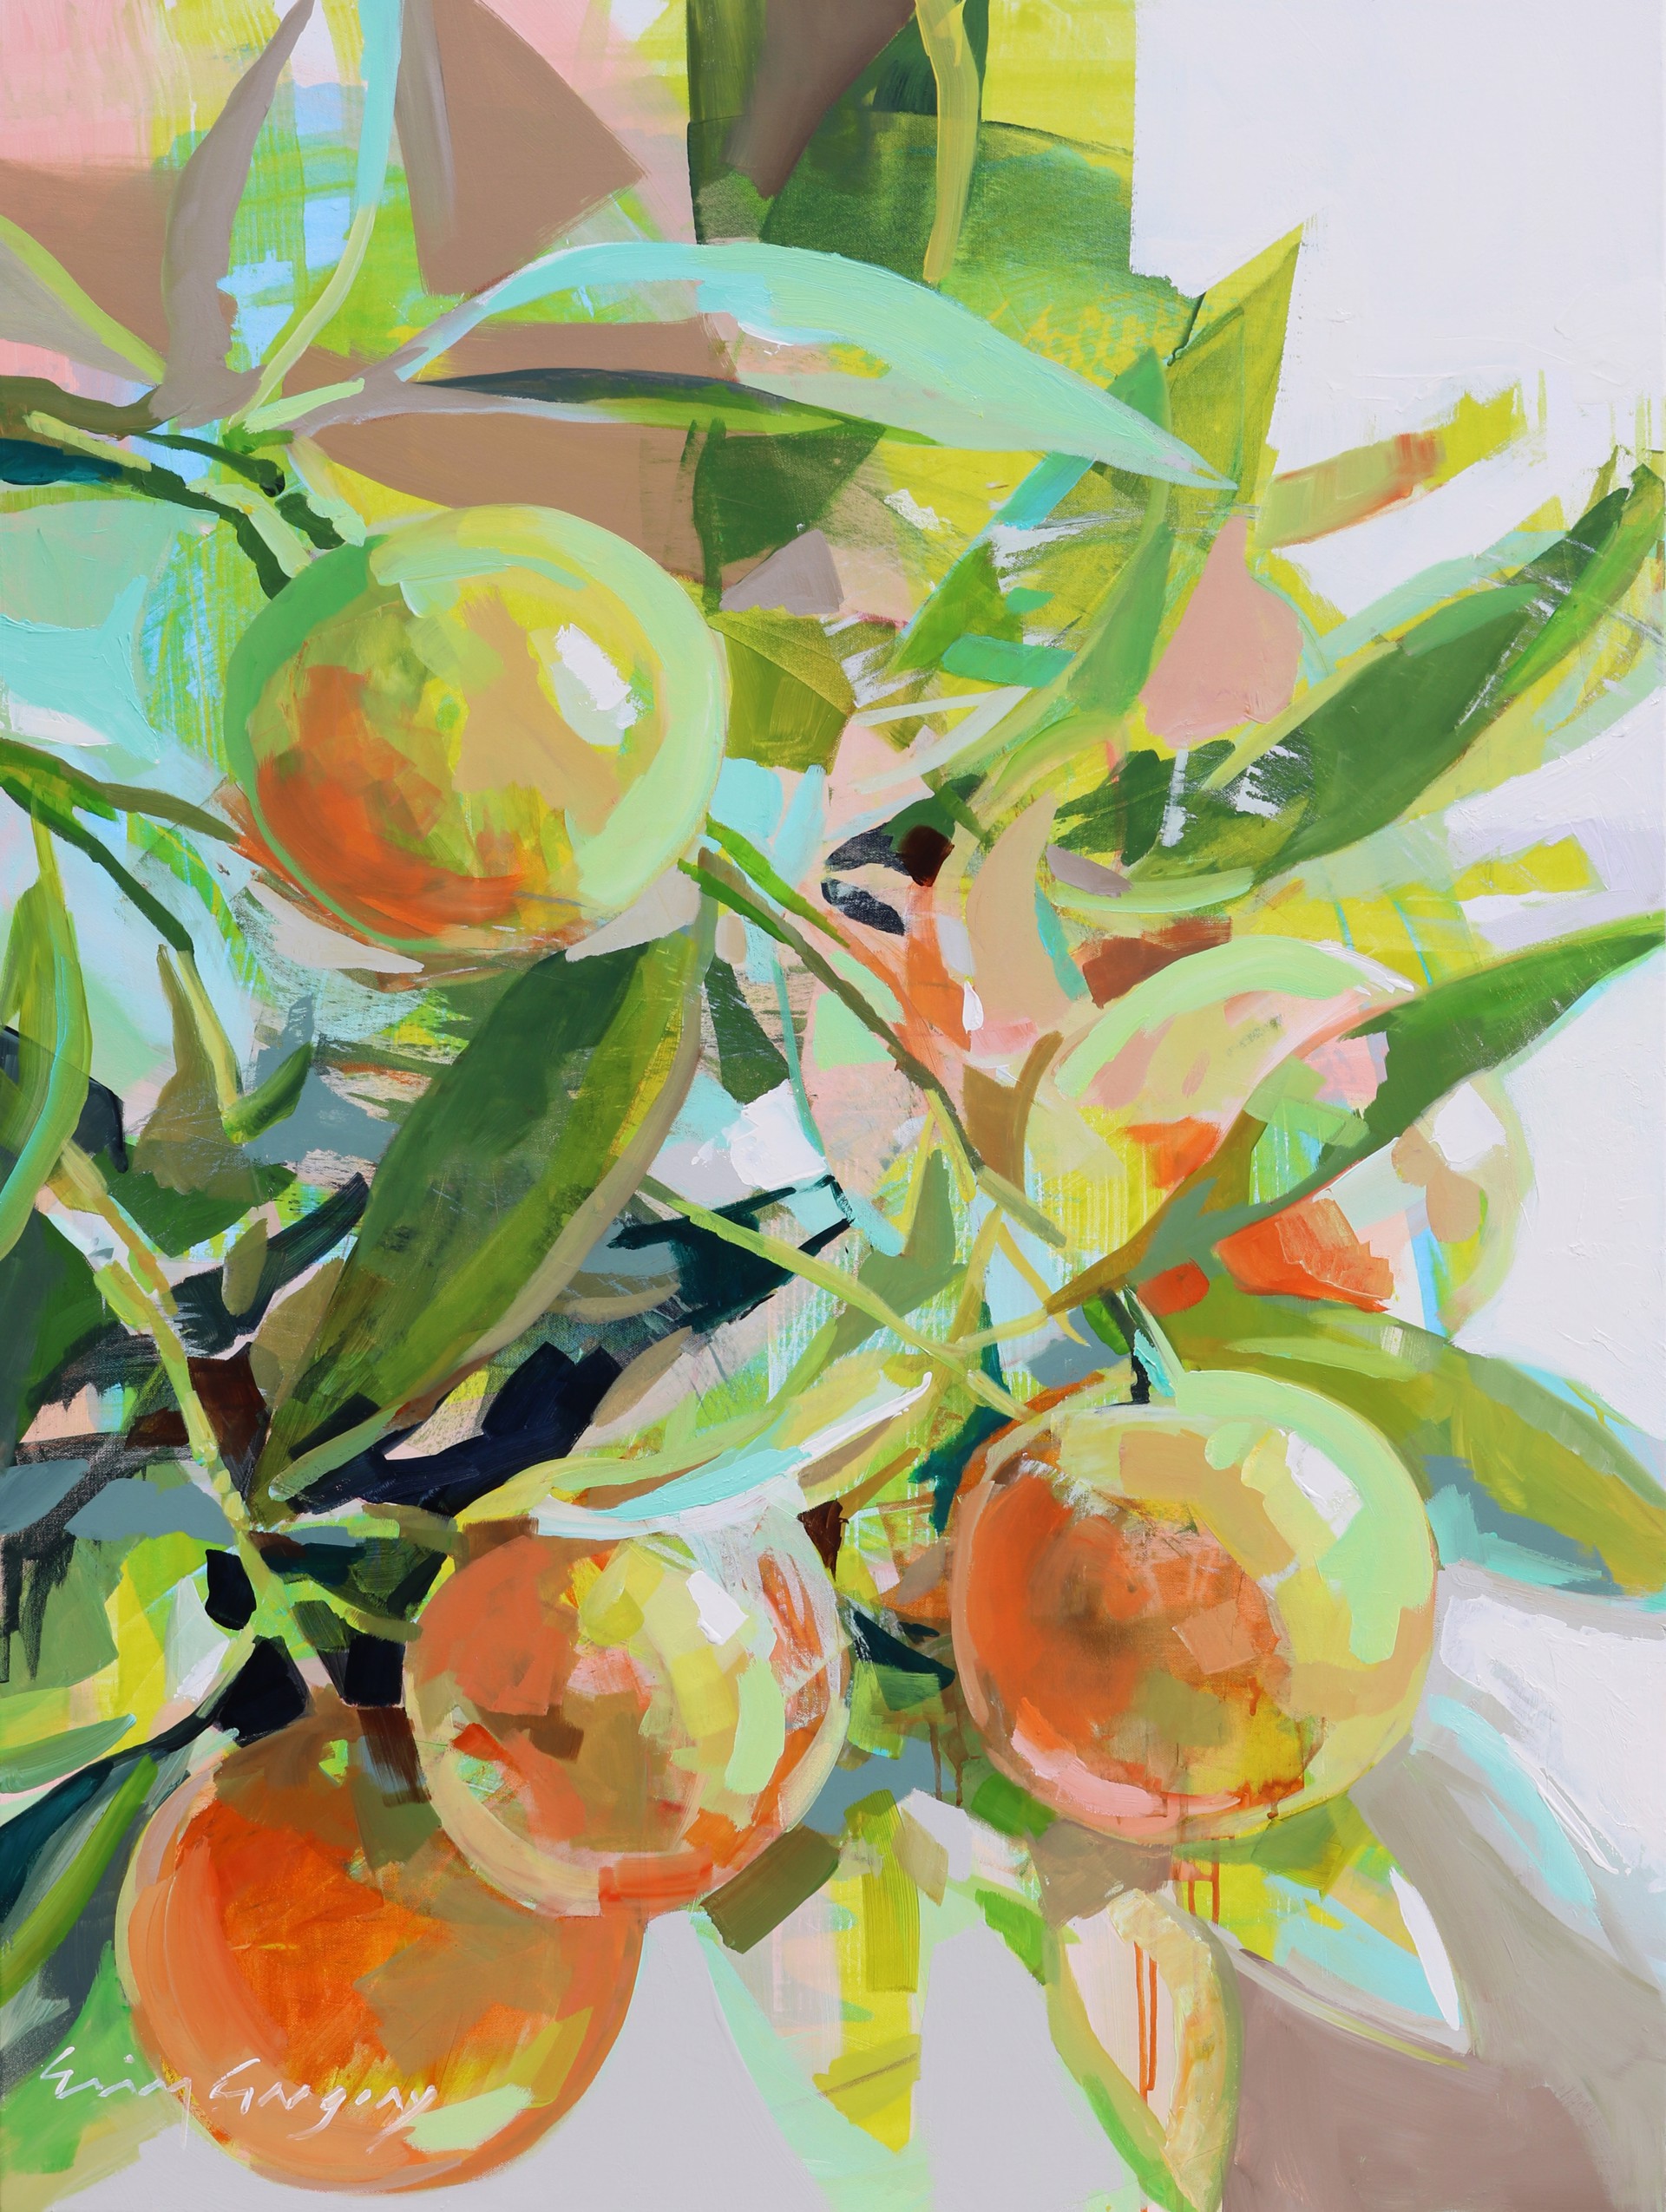 Orangerie 2 by Erin Gregory